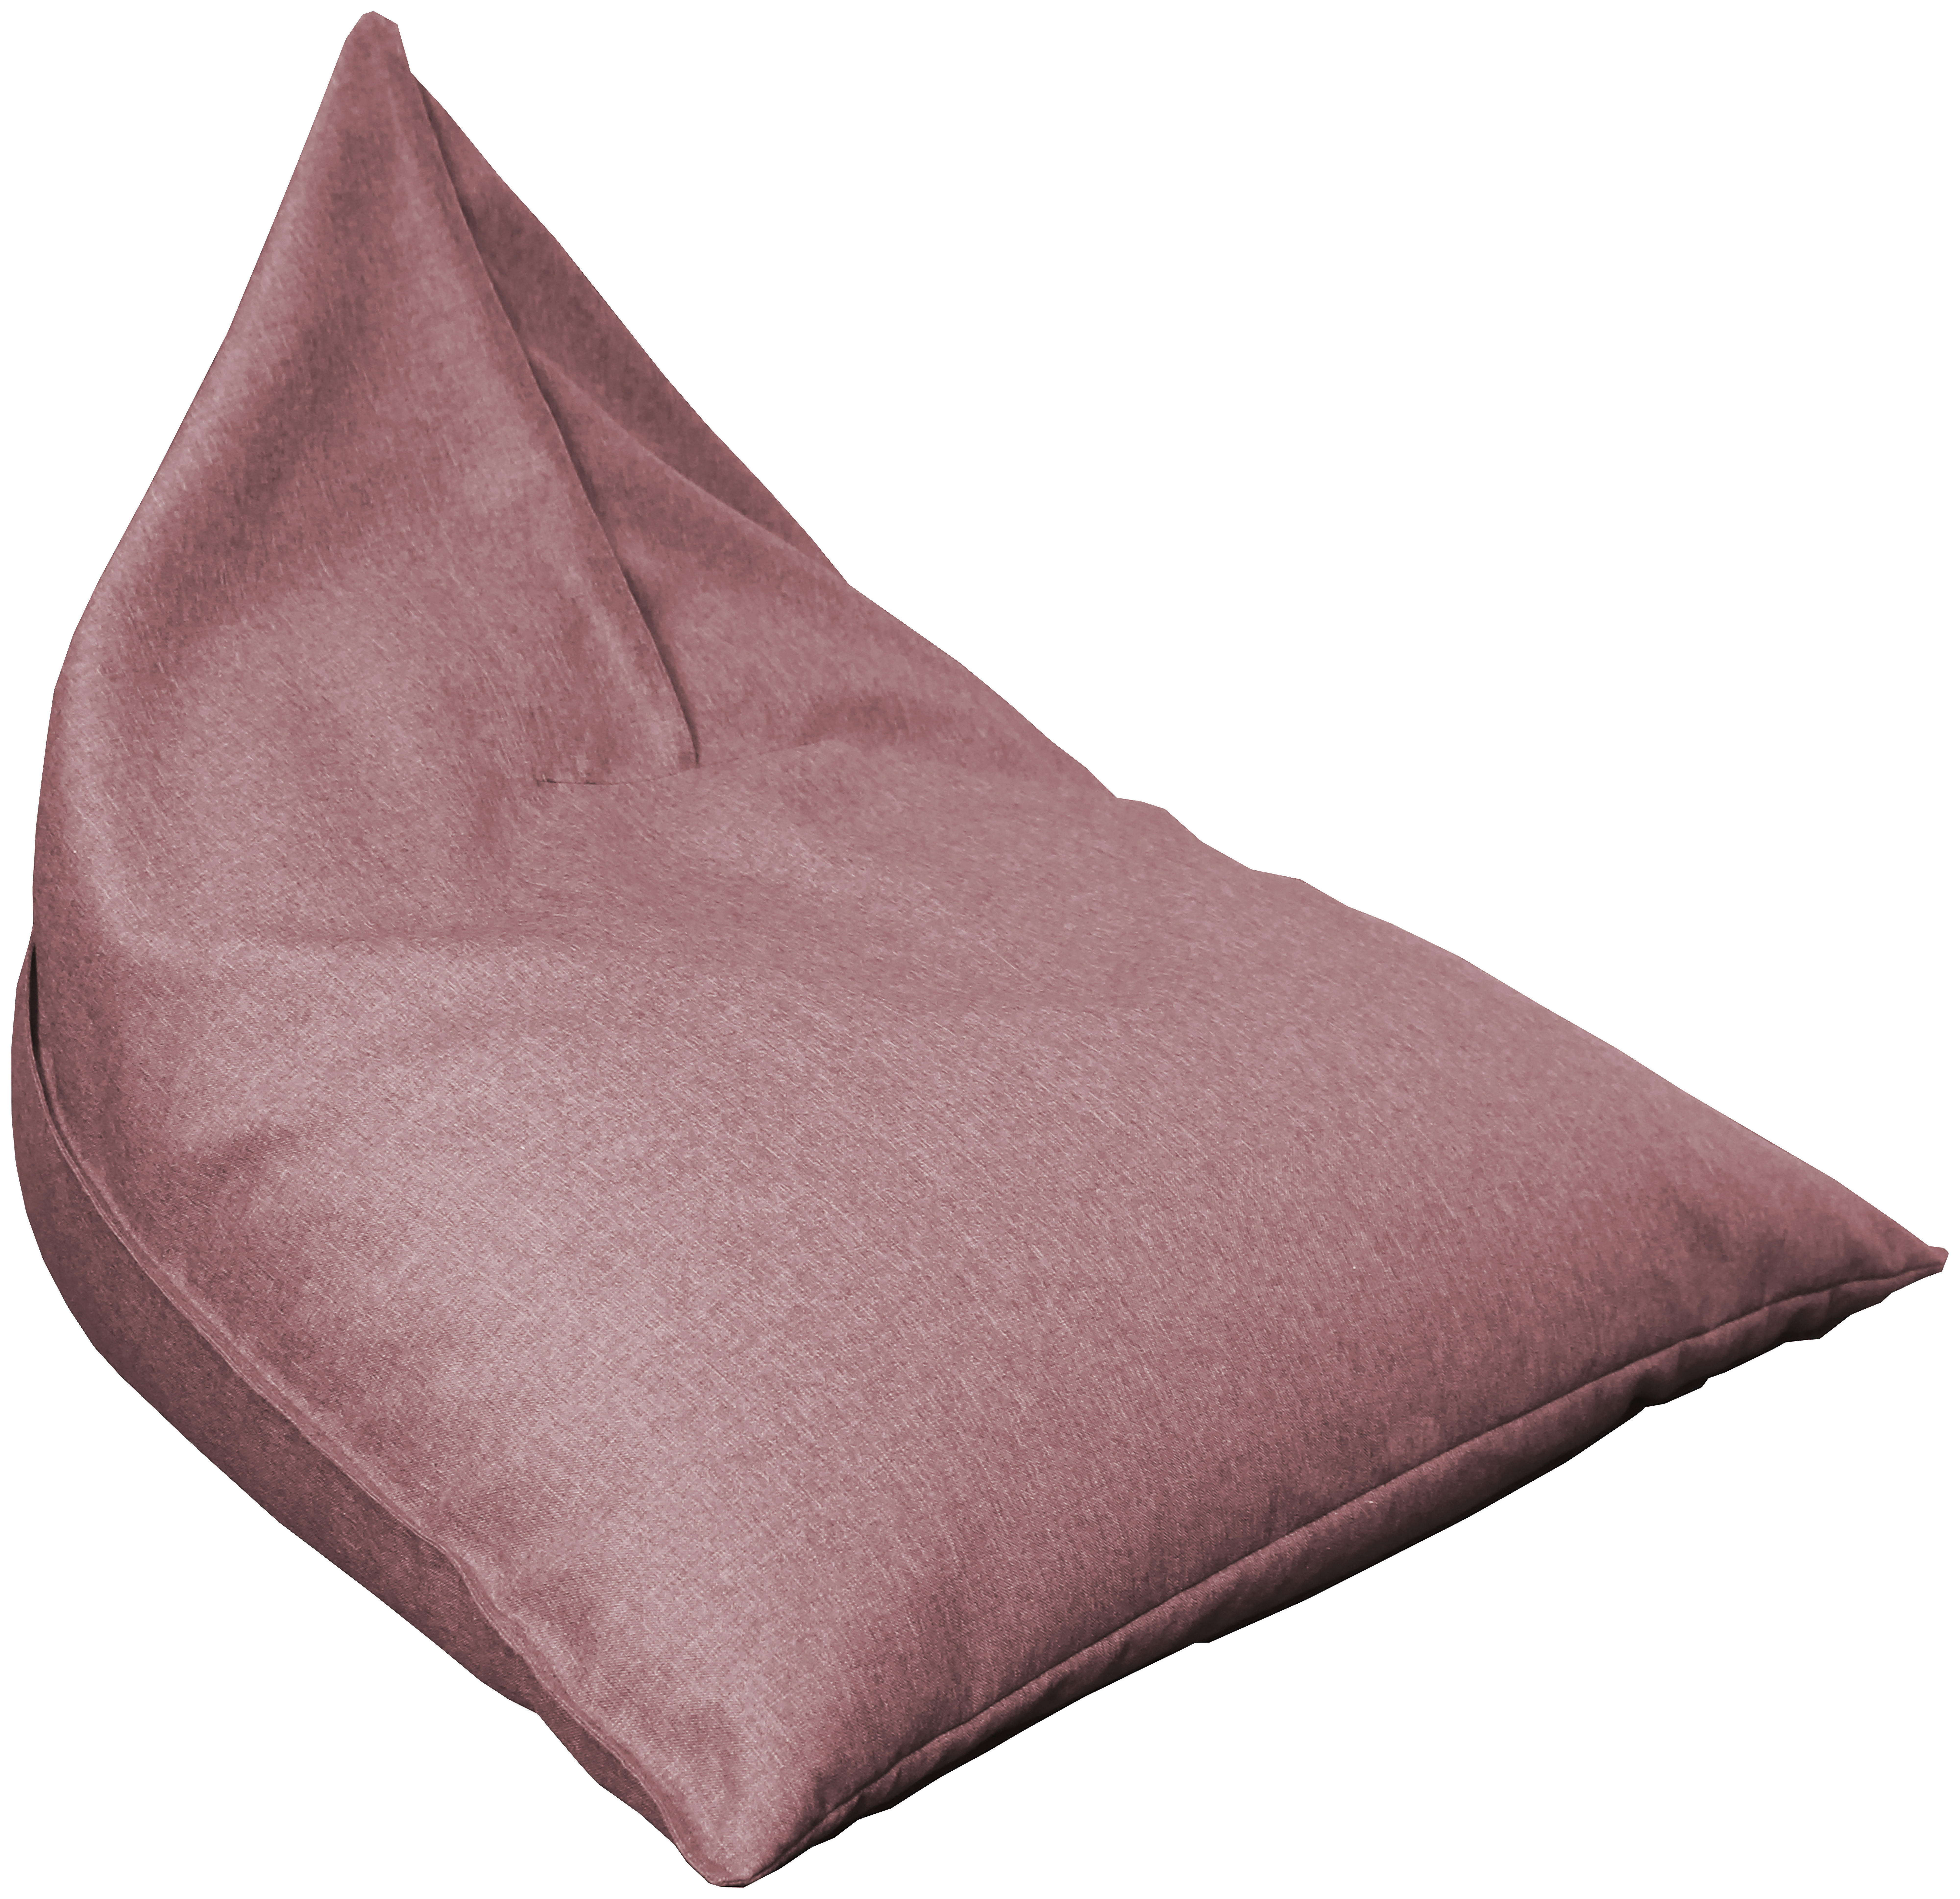 SAC DE ȘEZUT 230 l  - roz, Design, textil (110/85/130cm) - Carryhome